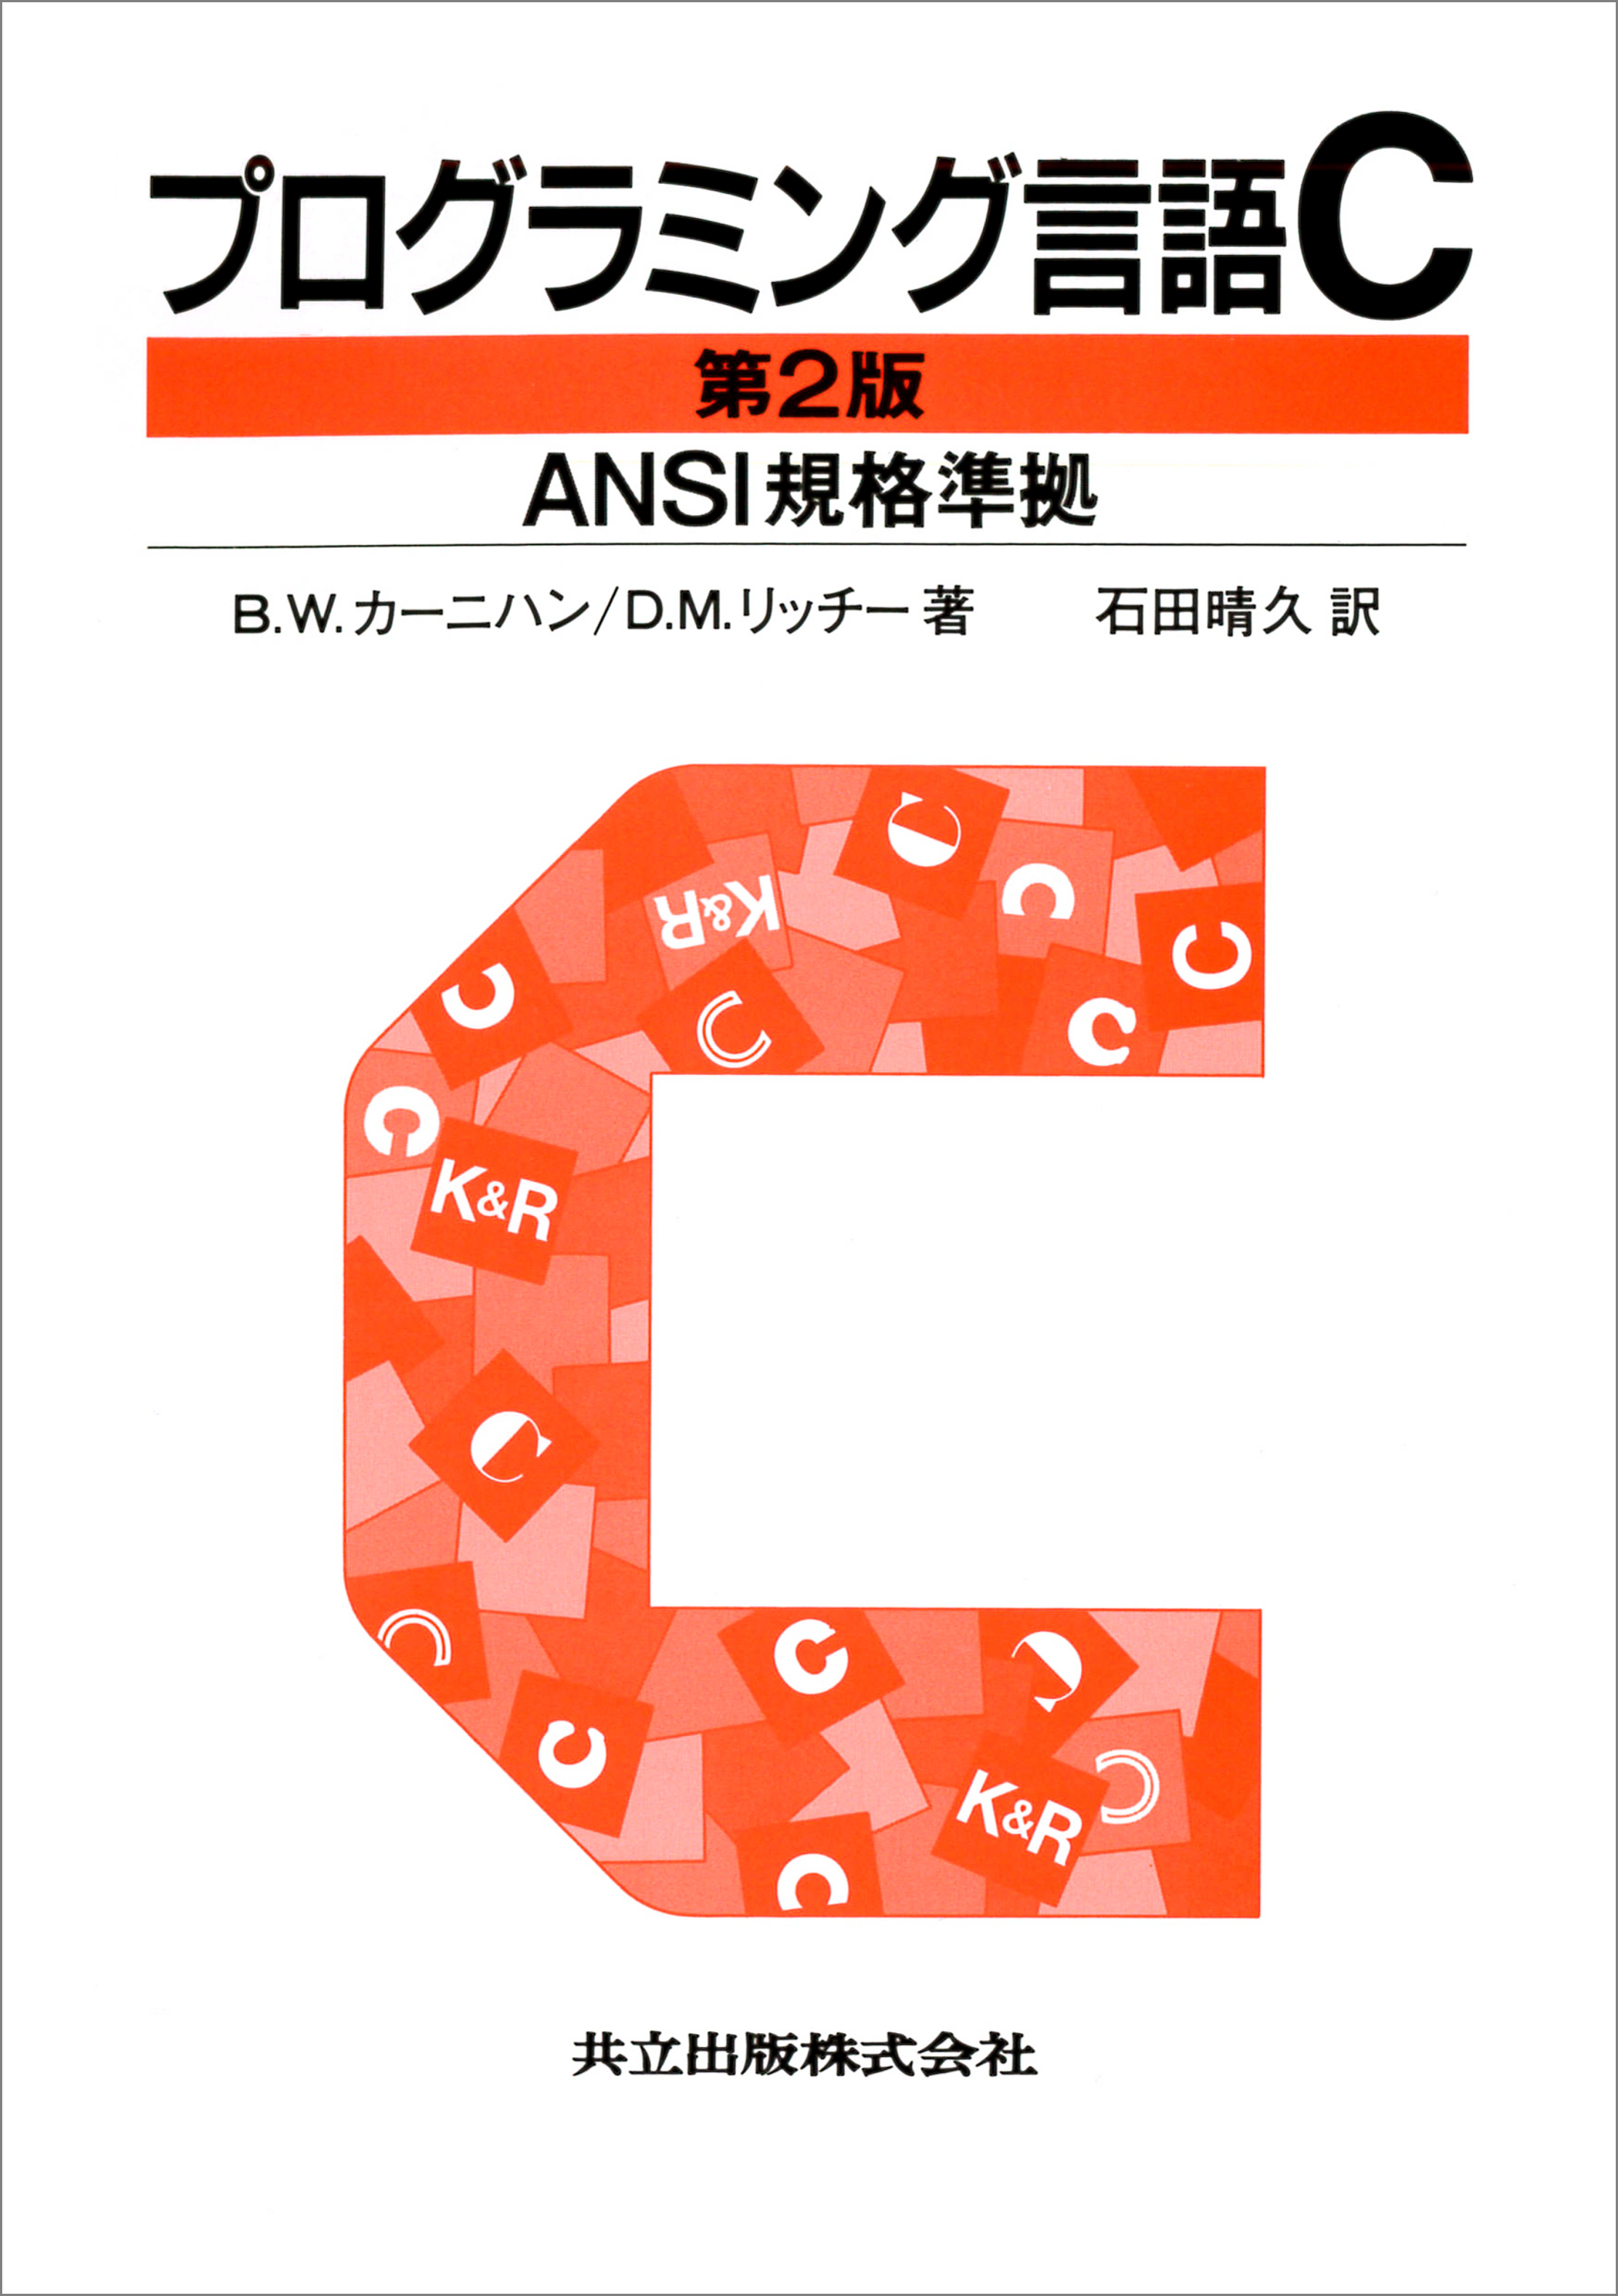 やさしく学べるC言語 ANSI規格準拠